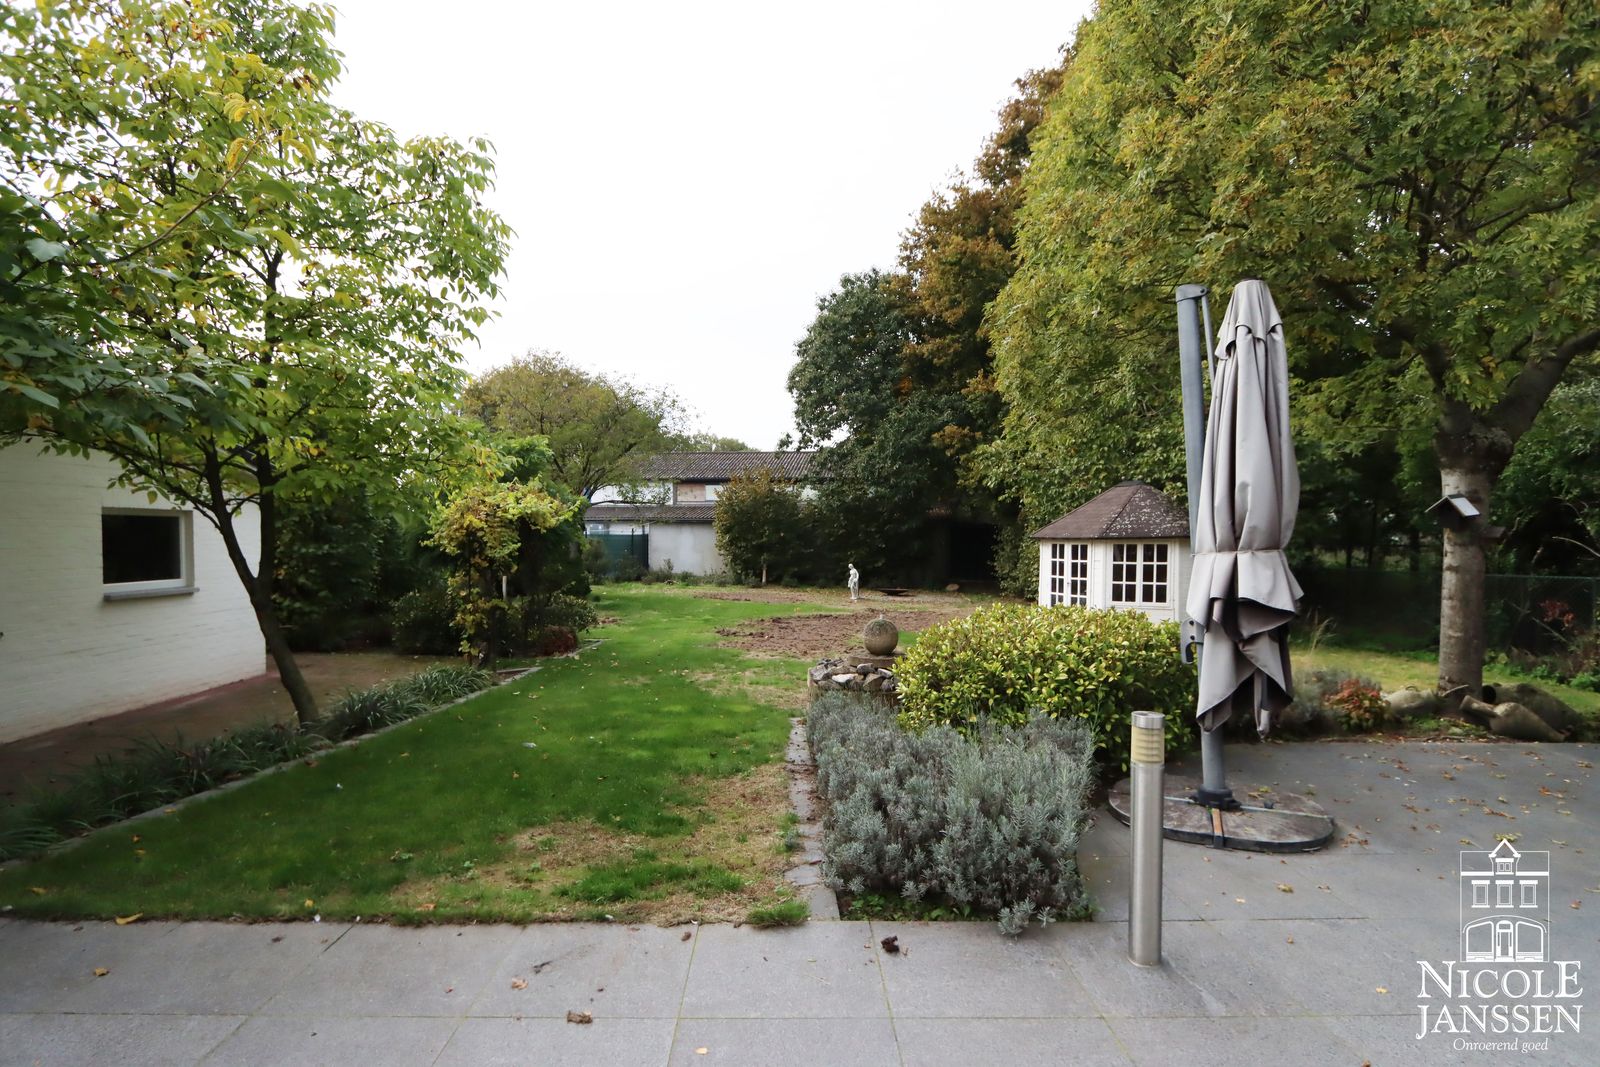 33 Nicole Janssen - huis te koop - Weertersteenweg 515 te Molenbeersel - tuin2.jpg